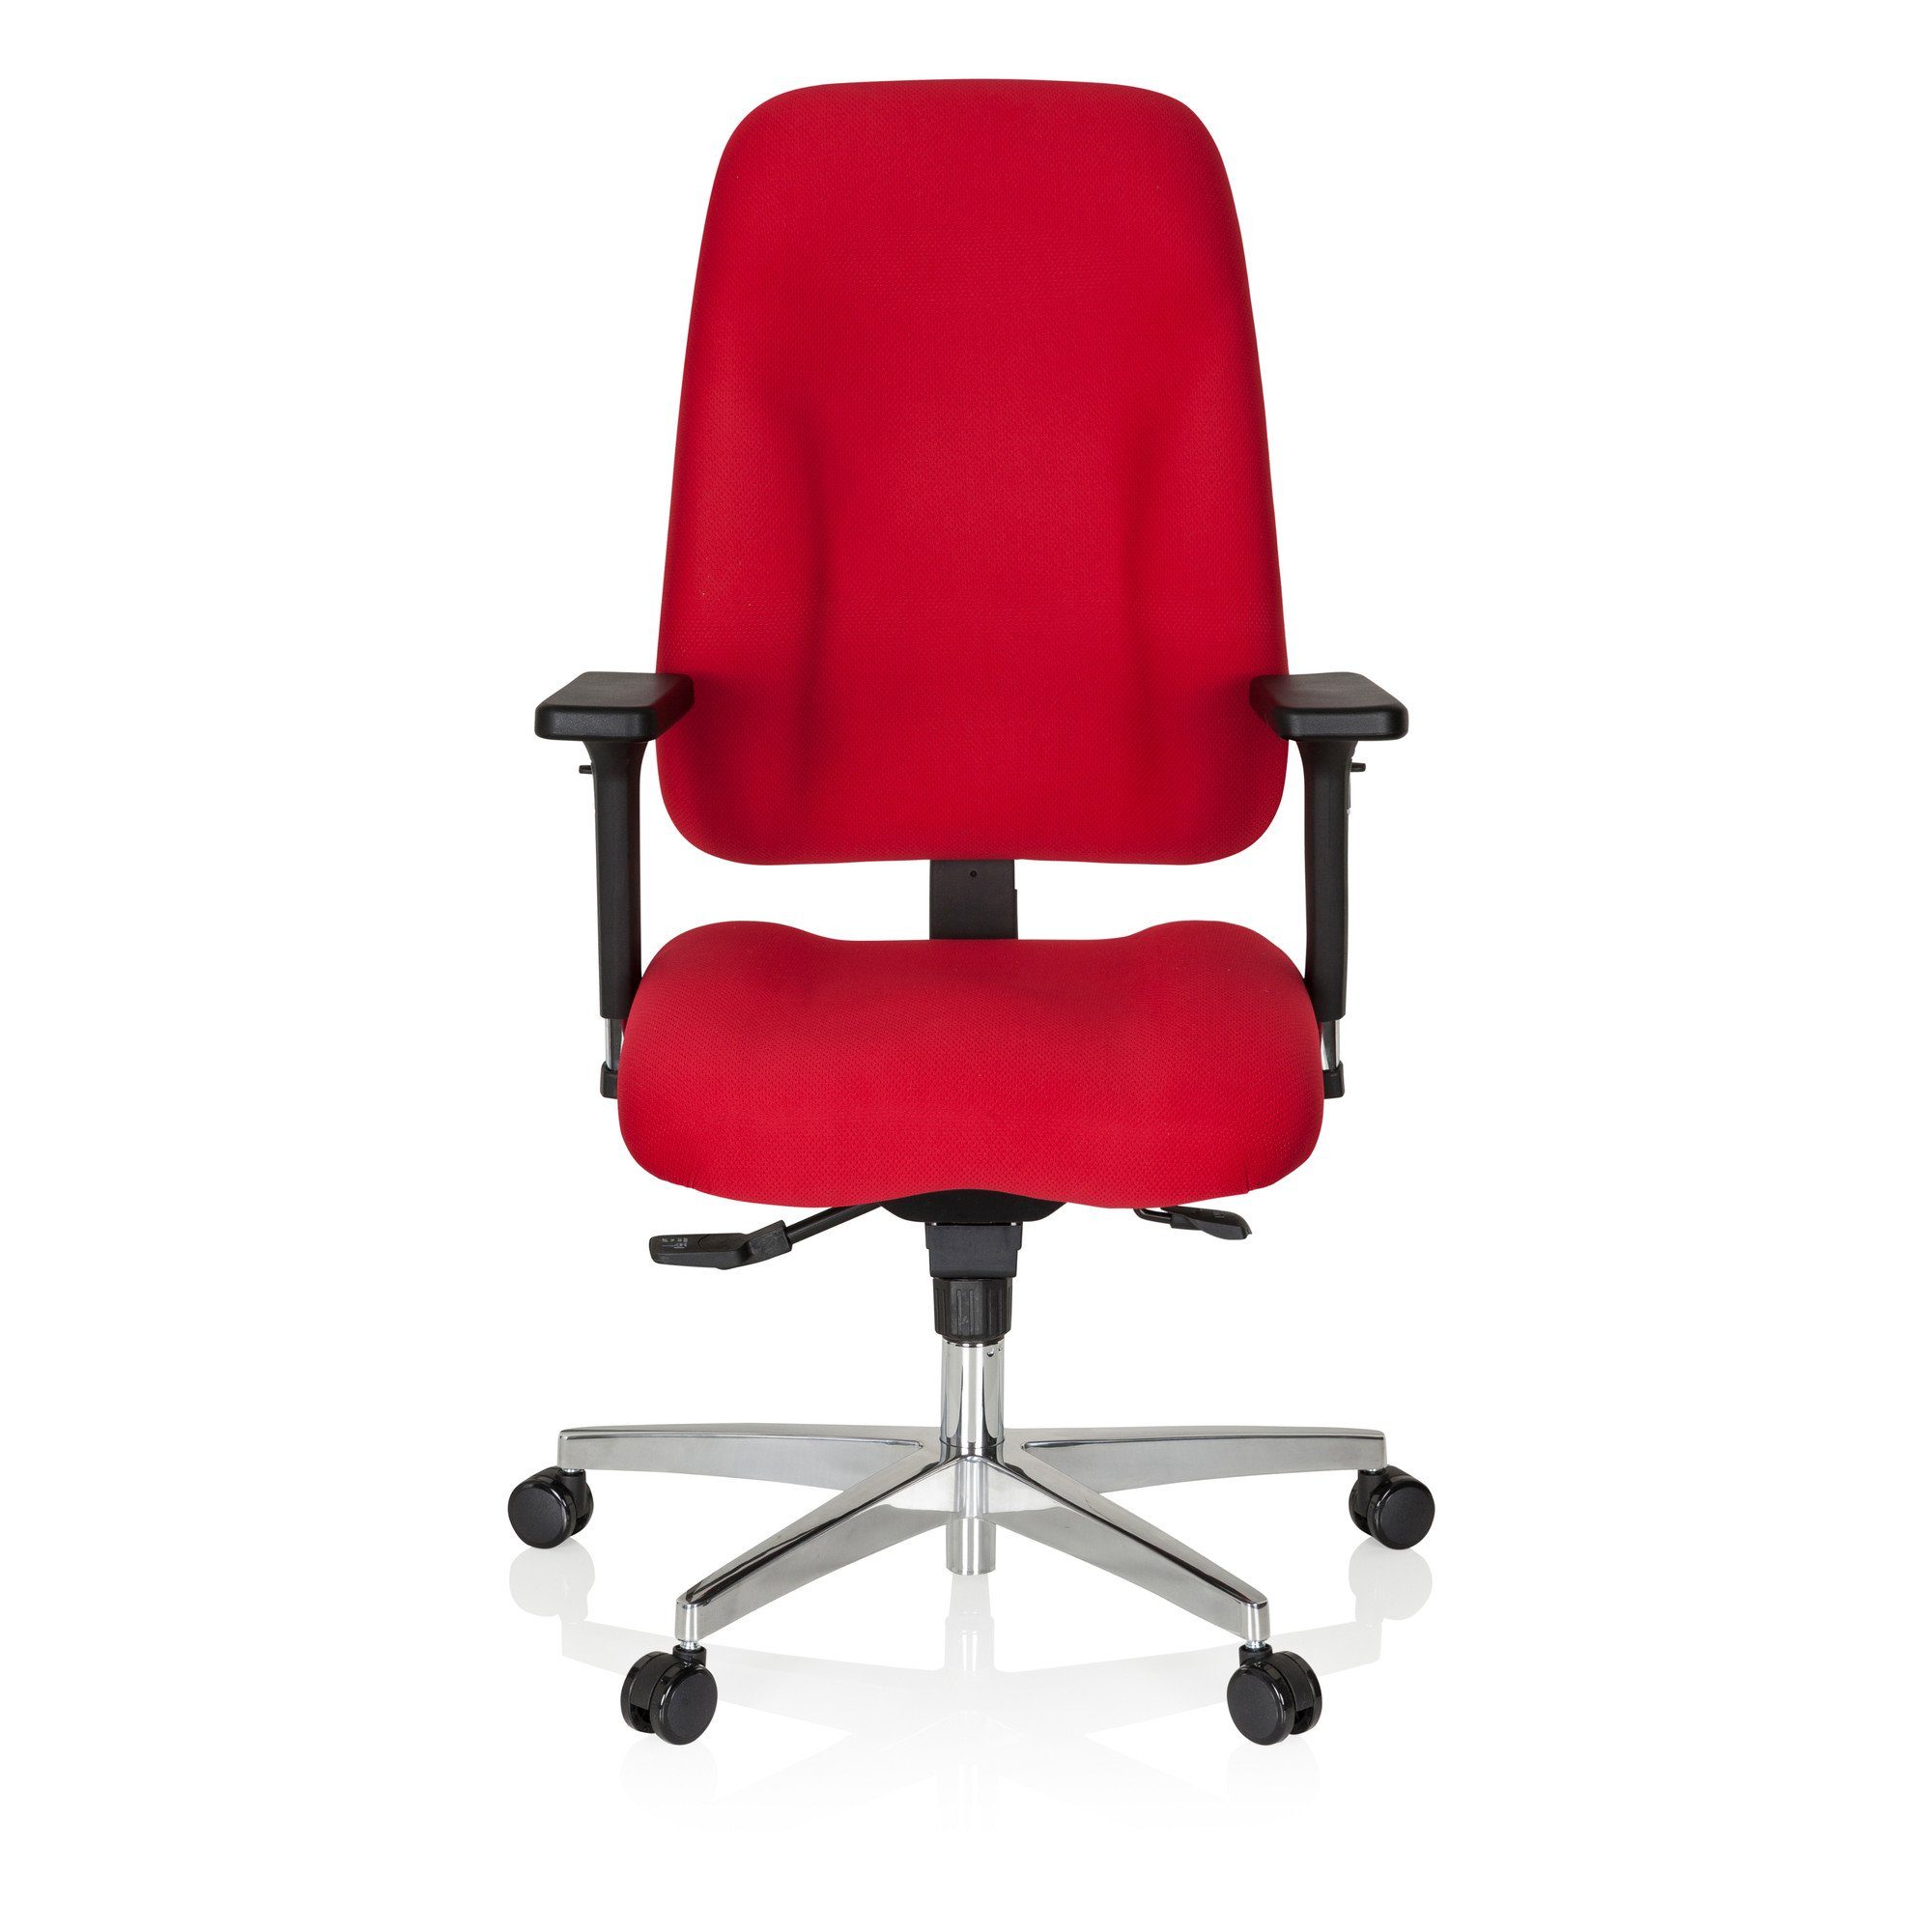 Stoff (1 Profi hjh ZENIT OFFICE Drehstuhl Bürostuhl Schreibtischstuhl ergonomisch Rot St), COMFORT